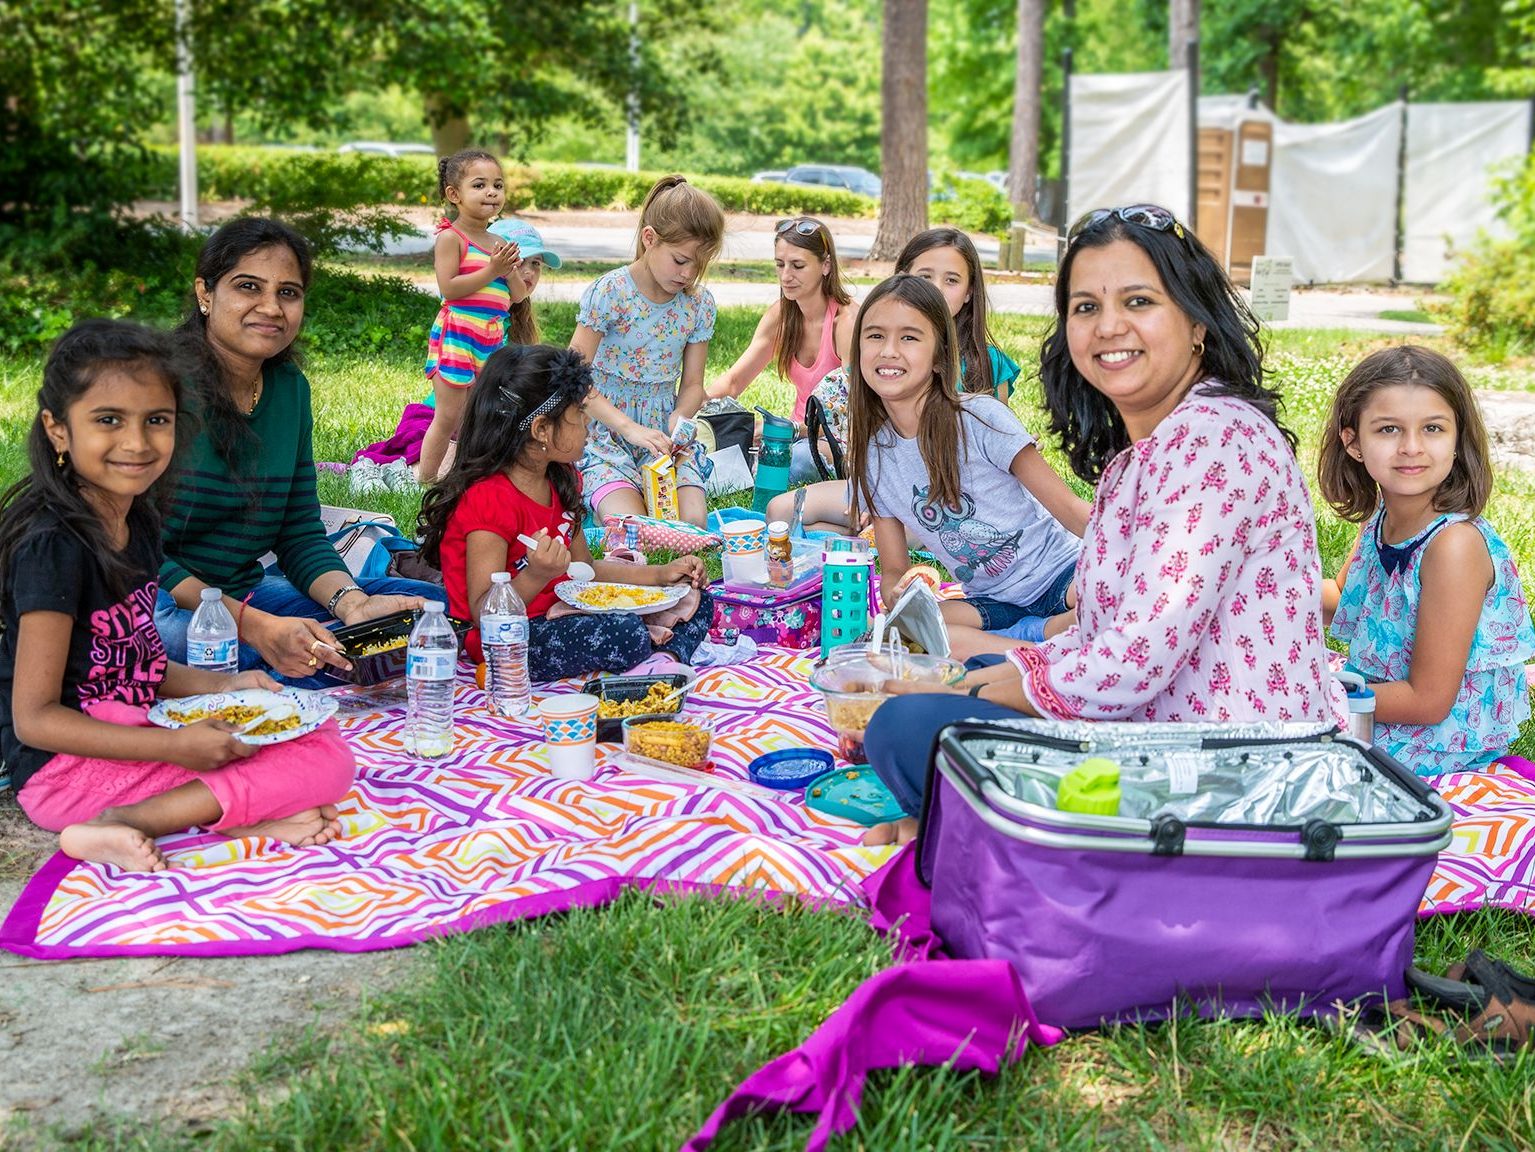 Large family enjoying a picnic.